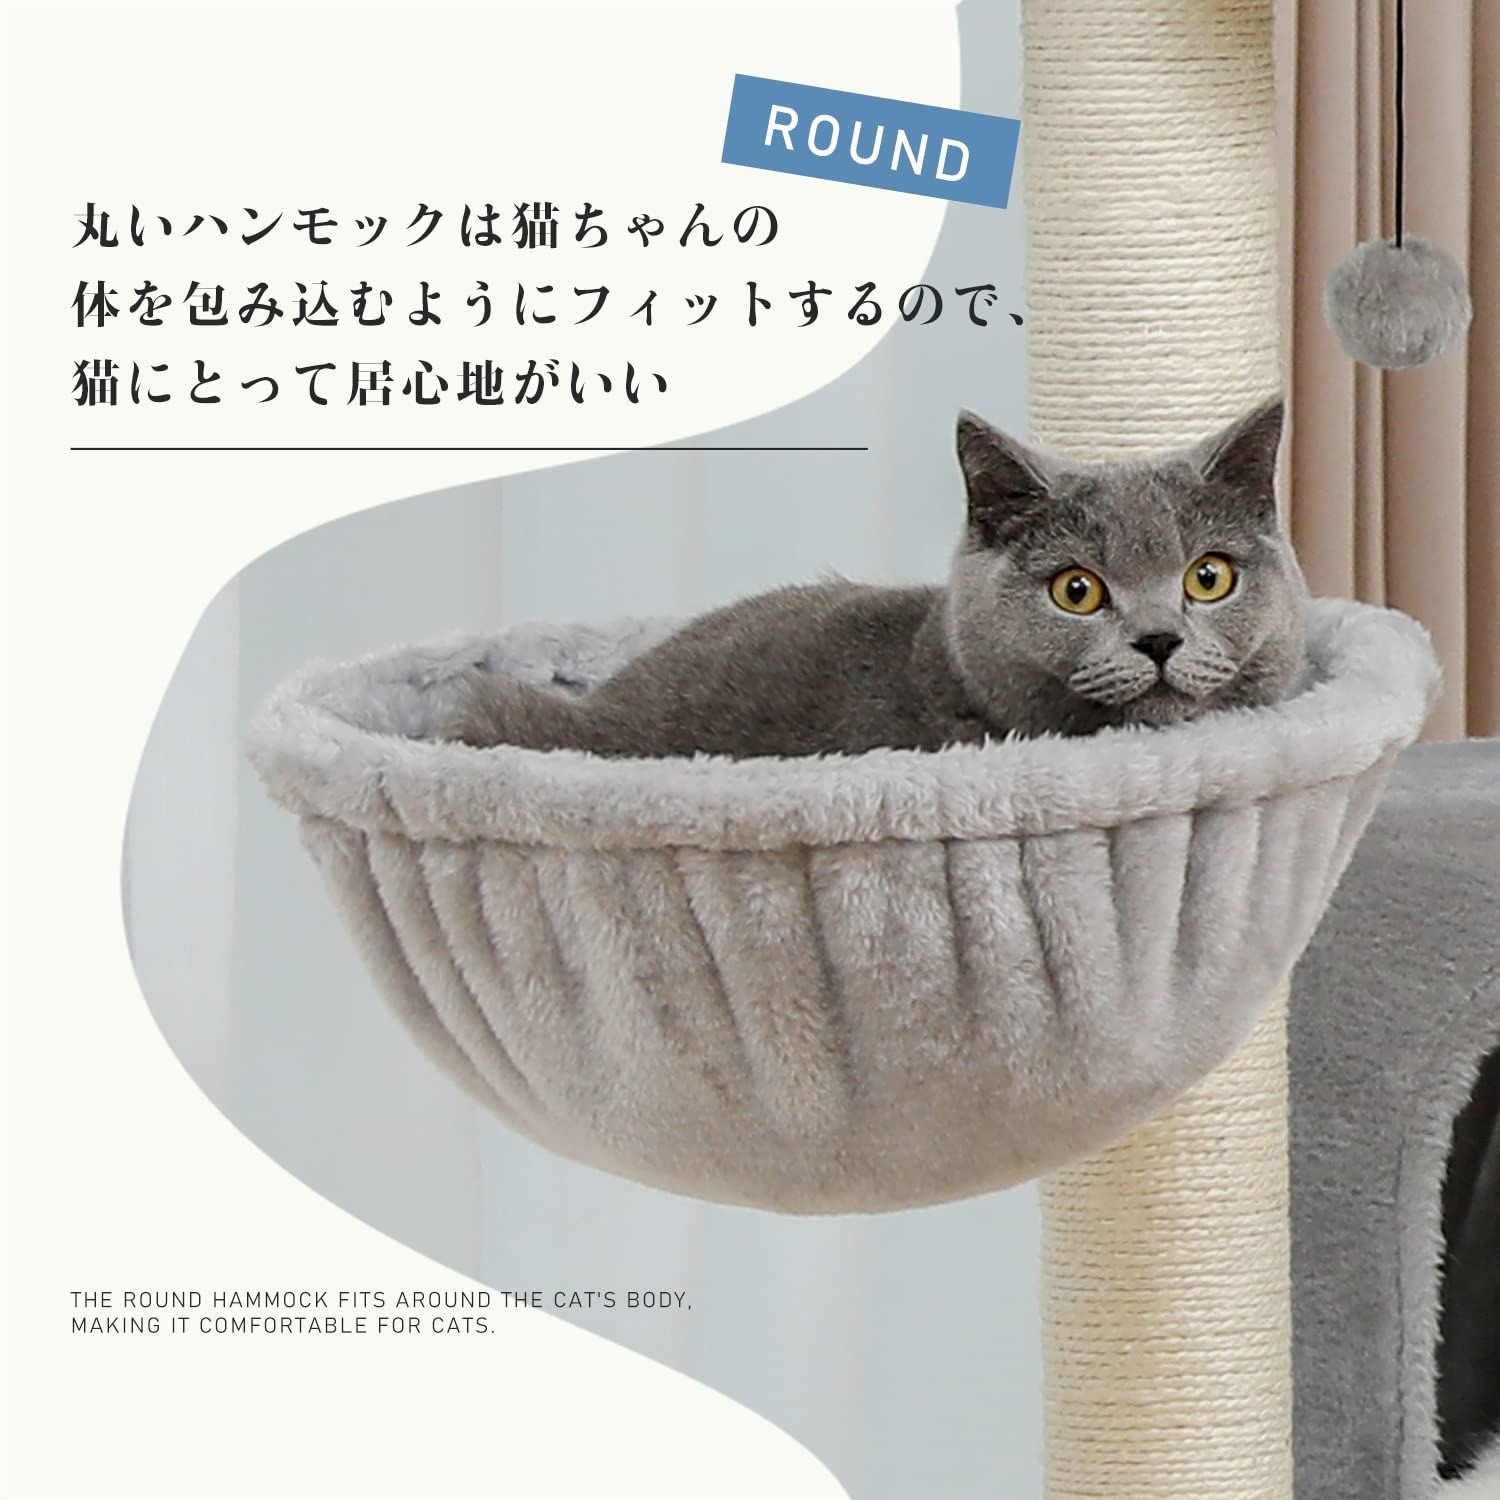 【在庫処分】PETEPELA(ぺテぺラ) キャットタワー 低め 大型猫 ペット